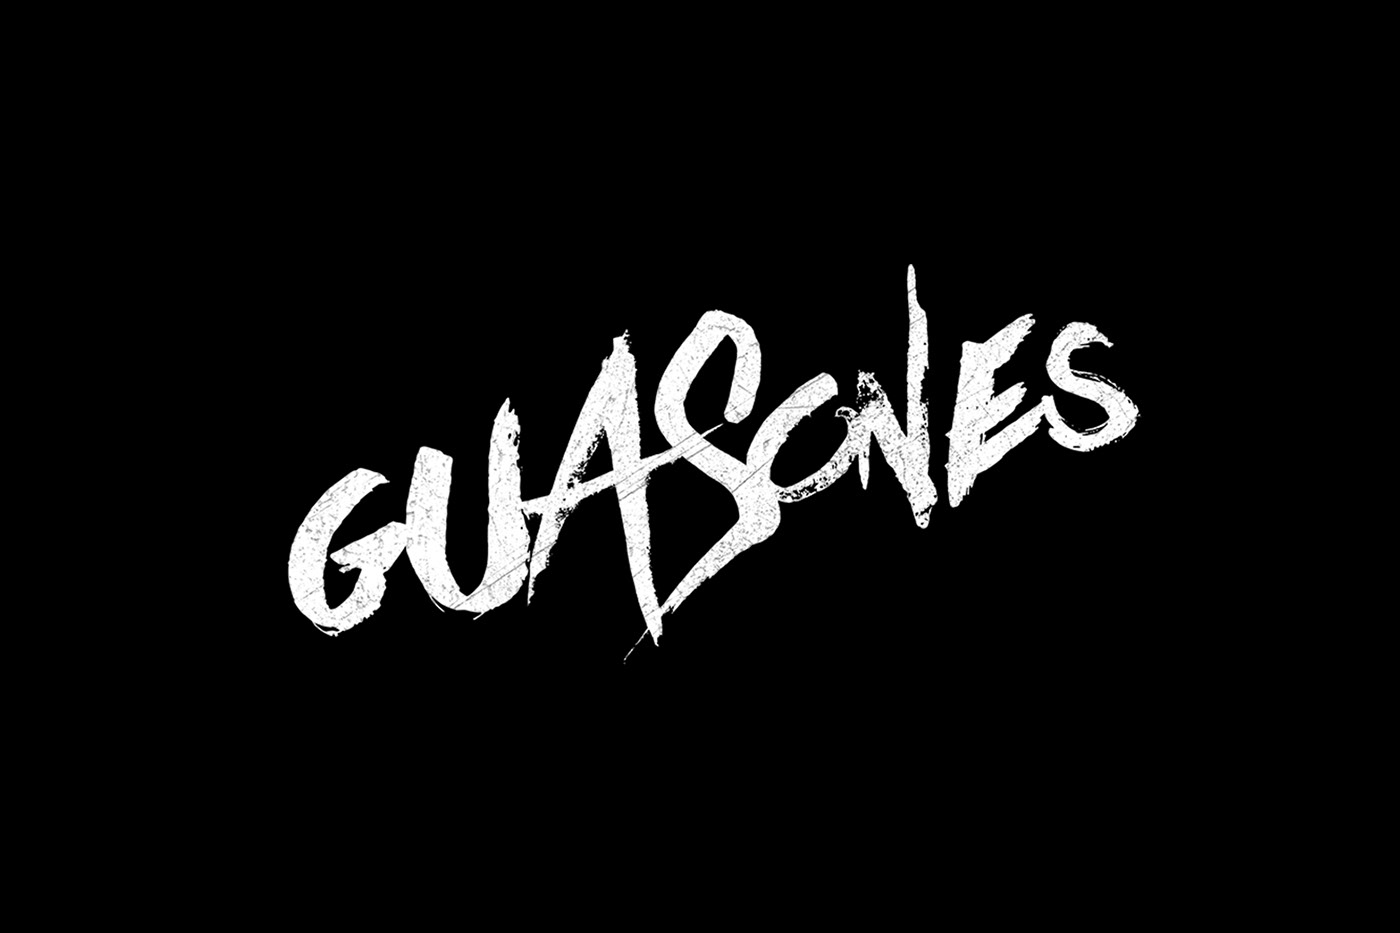 guasones la plata guasones logo guasones rock music brand music brand identity Music Branding Rock Band brand Rock band identity Rock logo